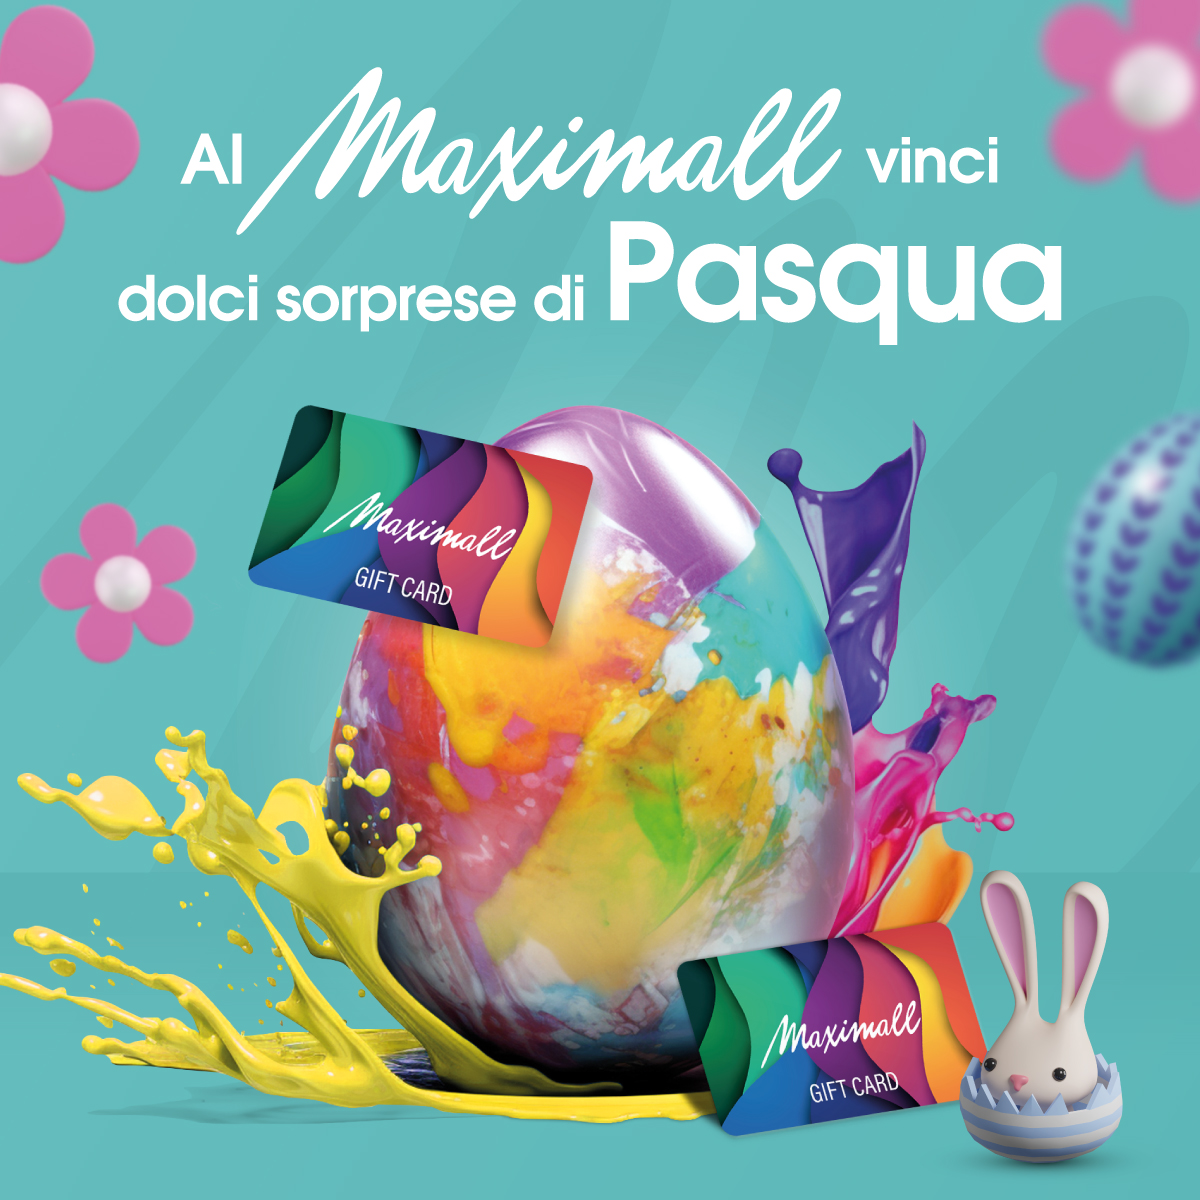 centro commerciale maximall concorso vinci dolci sorprese di pasqua thekom